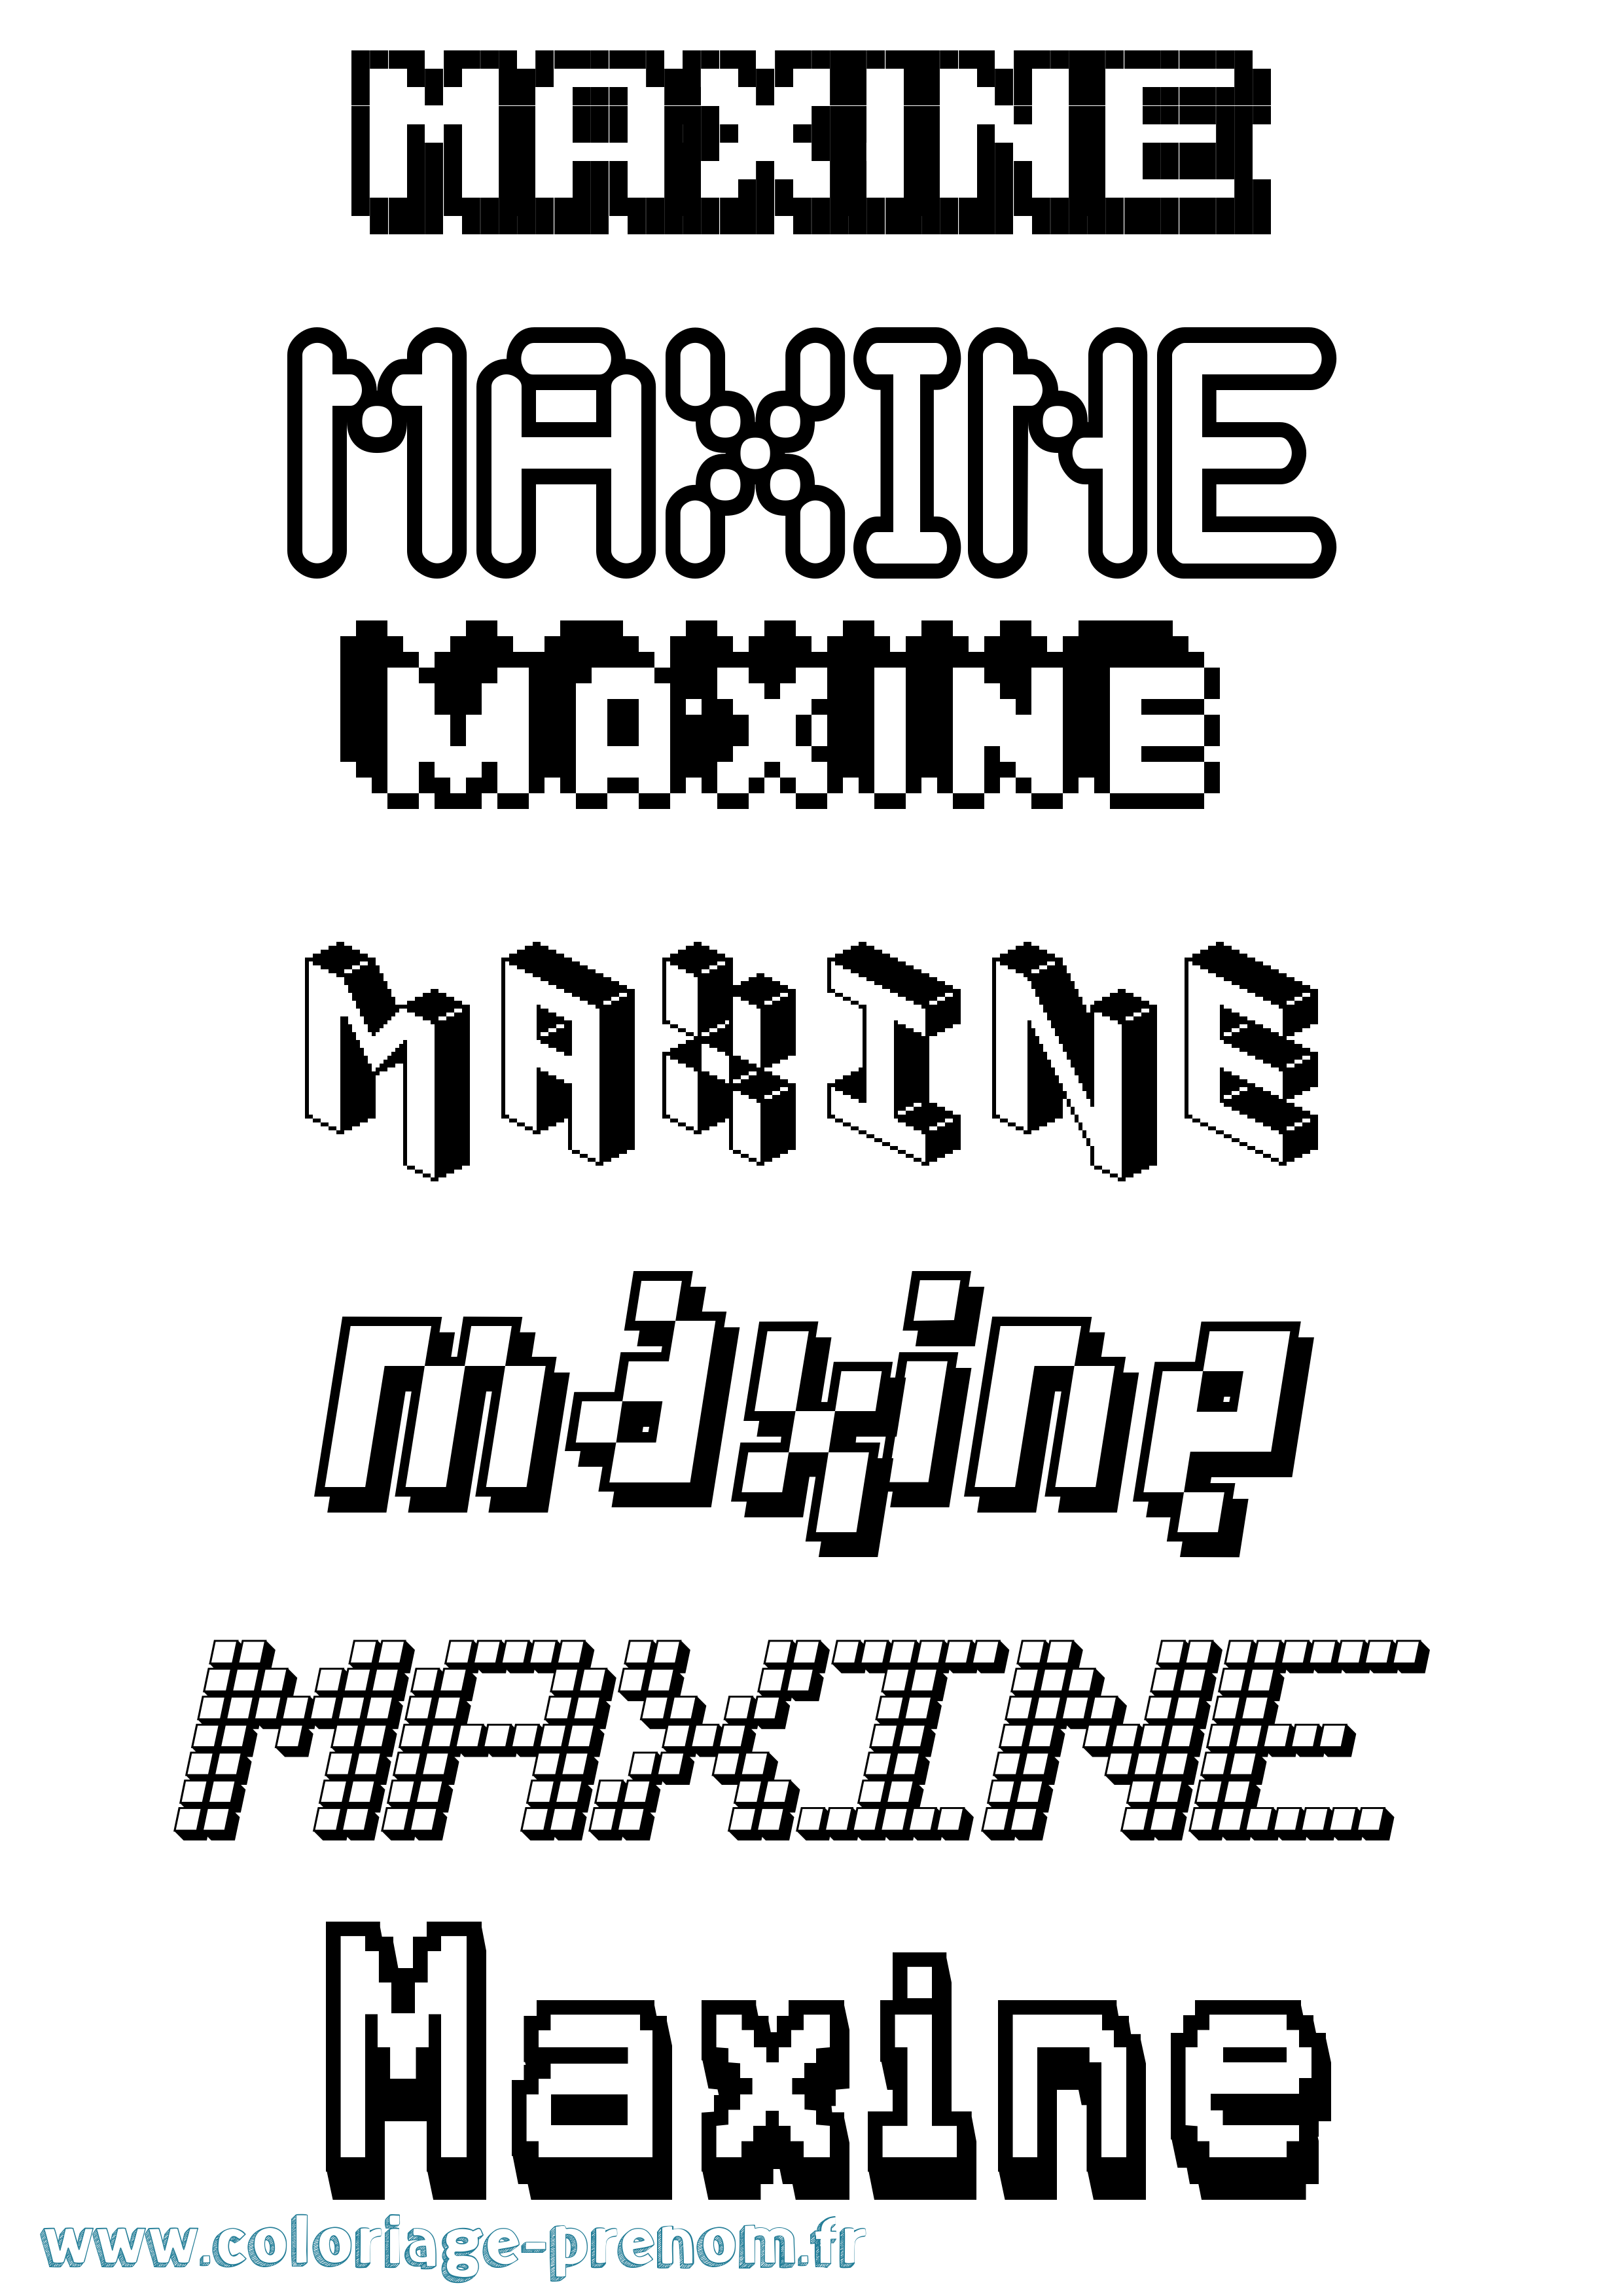 Coloriage prénom Maxine Pixel